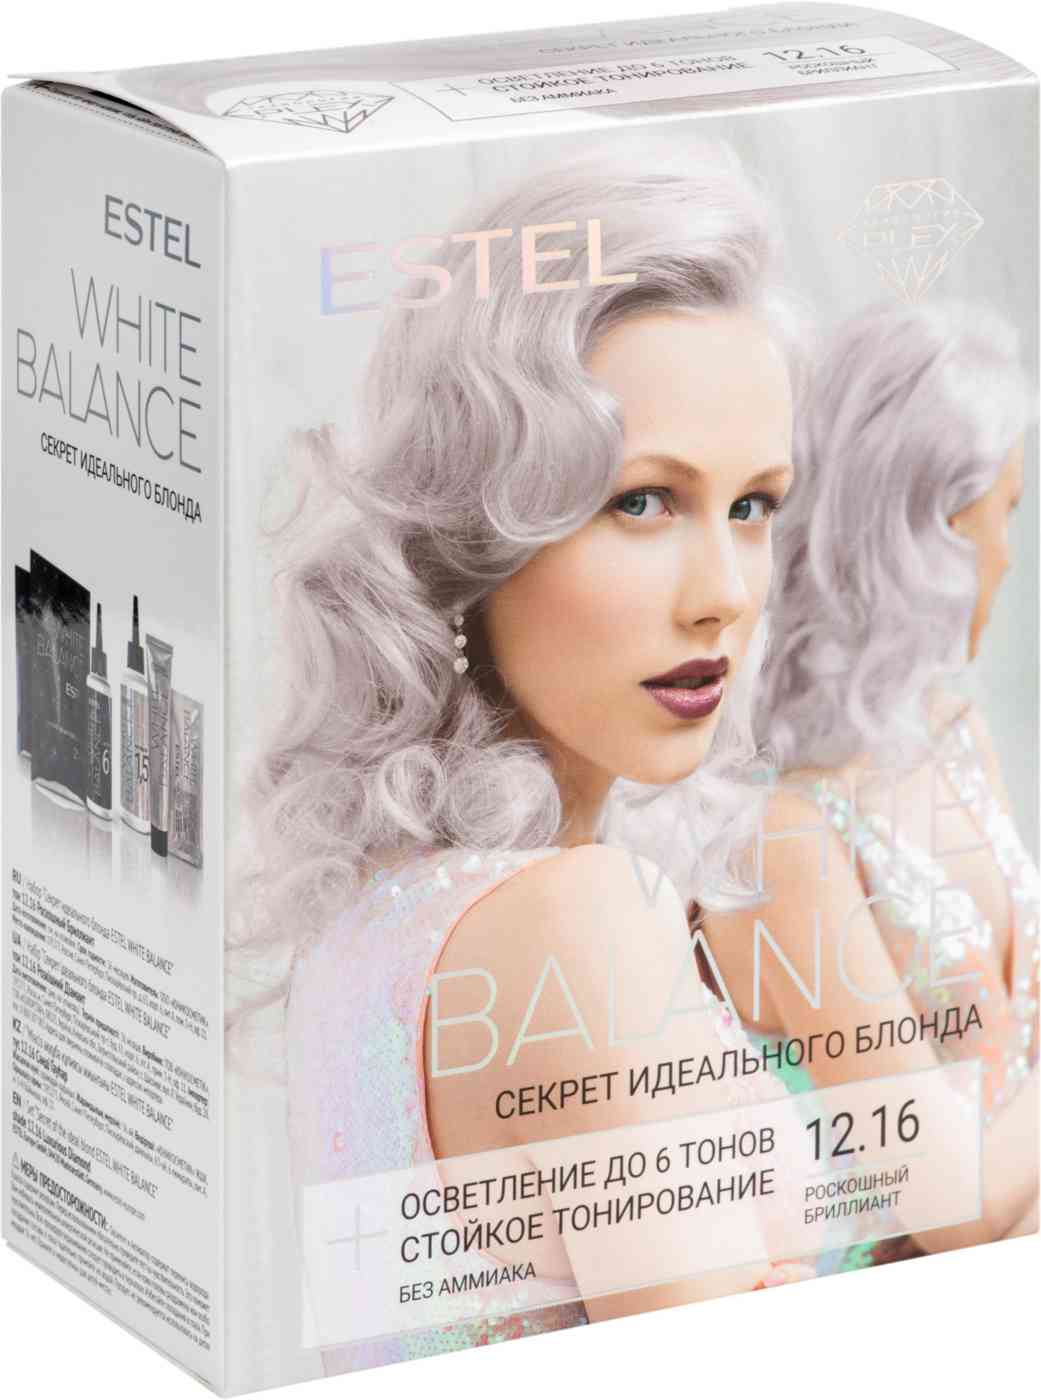 краска для волос estel white balance 12.16 роскошный бриллиант